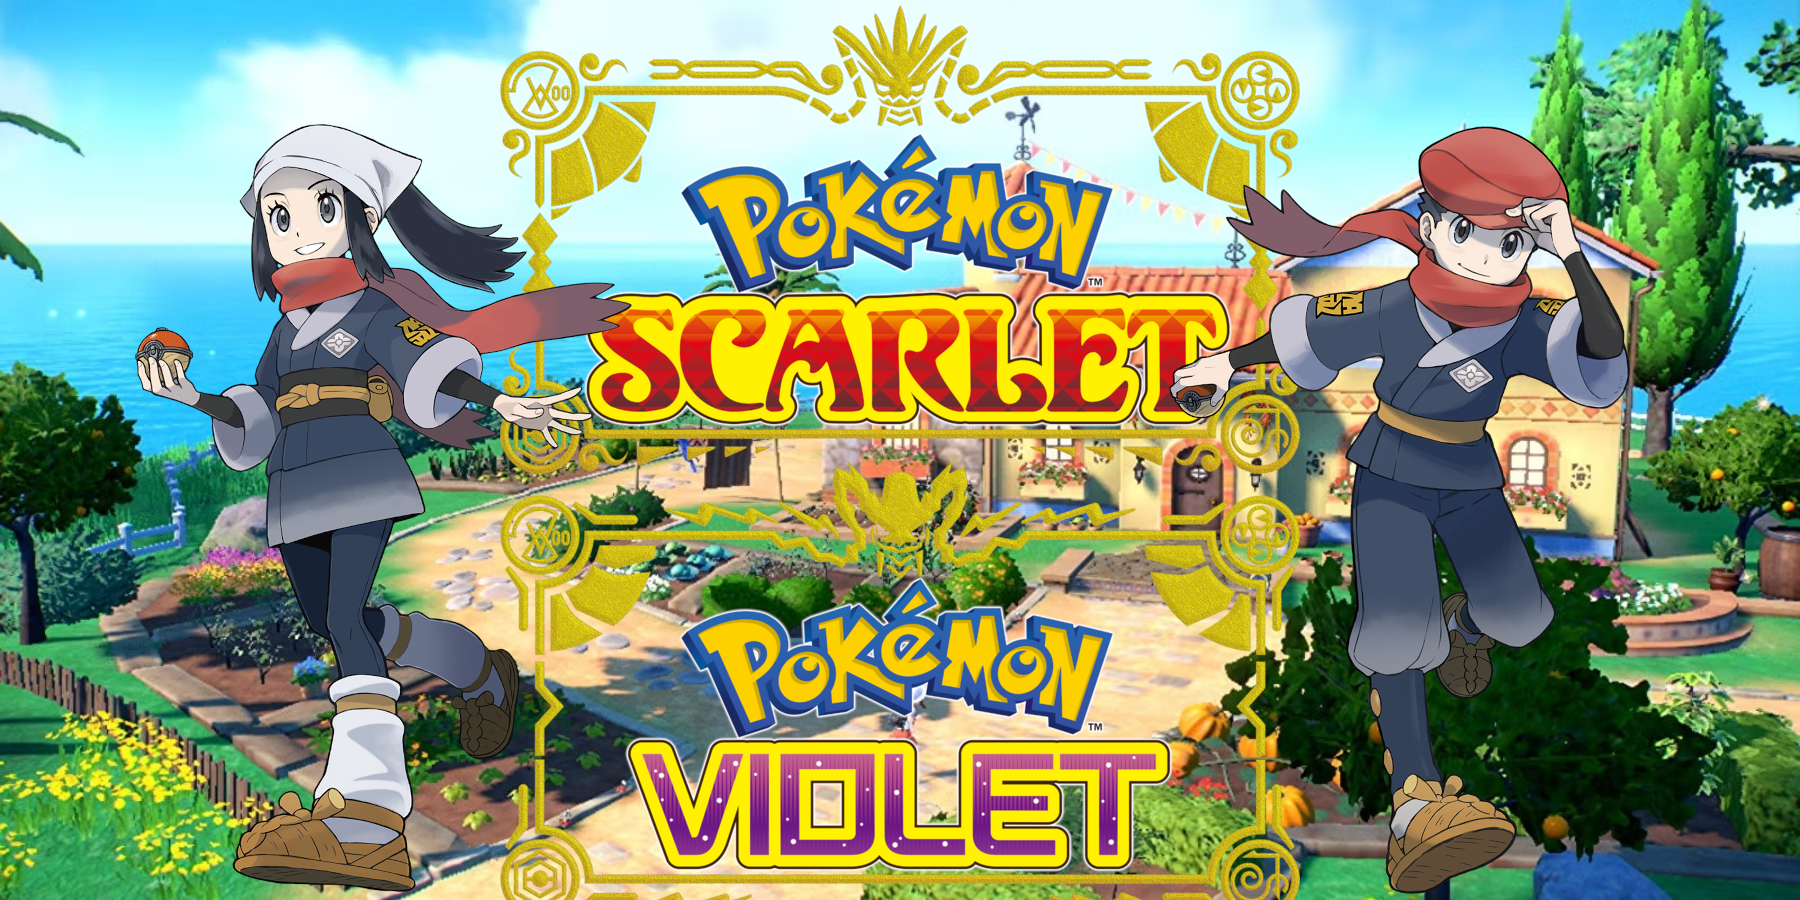 How Pokémon Scarlet & Violet Can Link To Legends Arceus